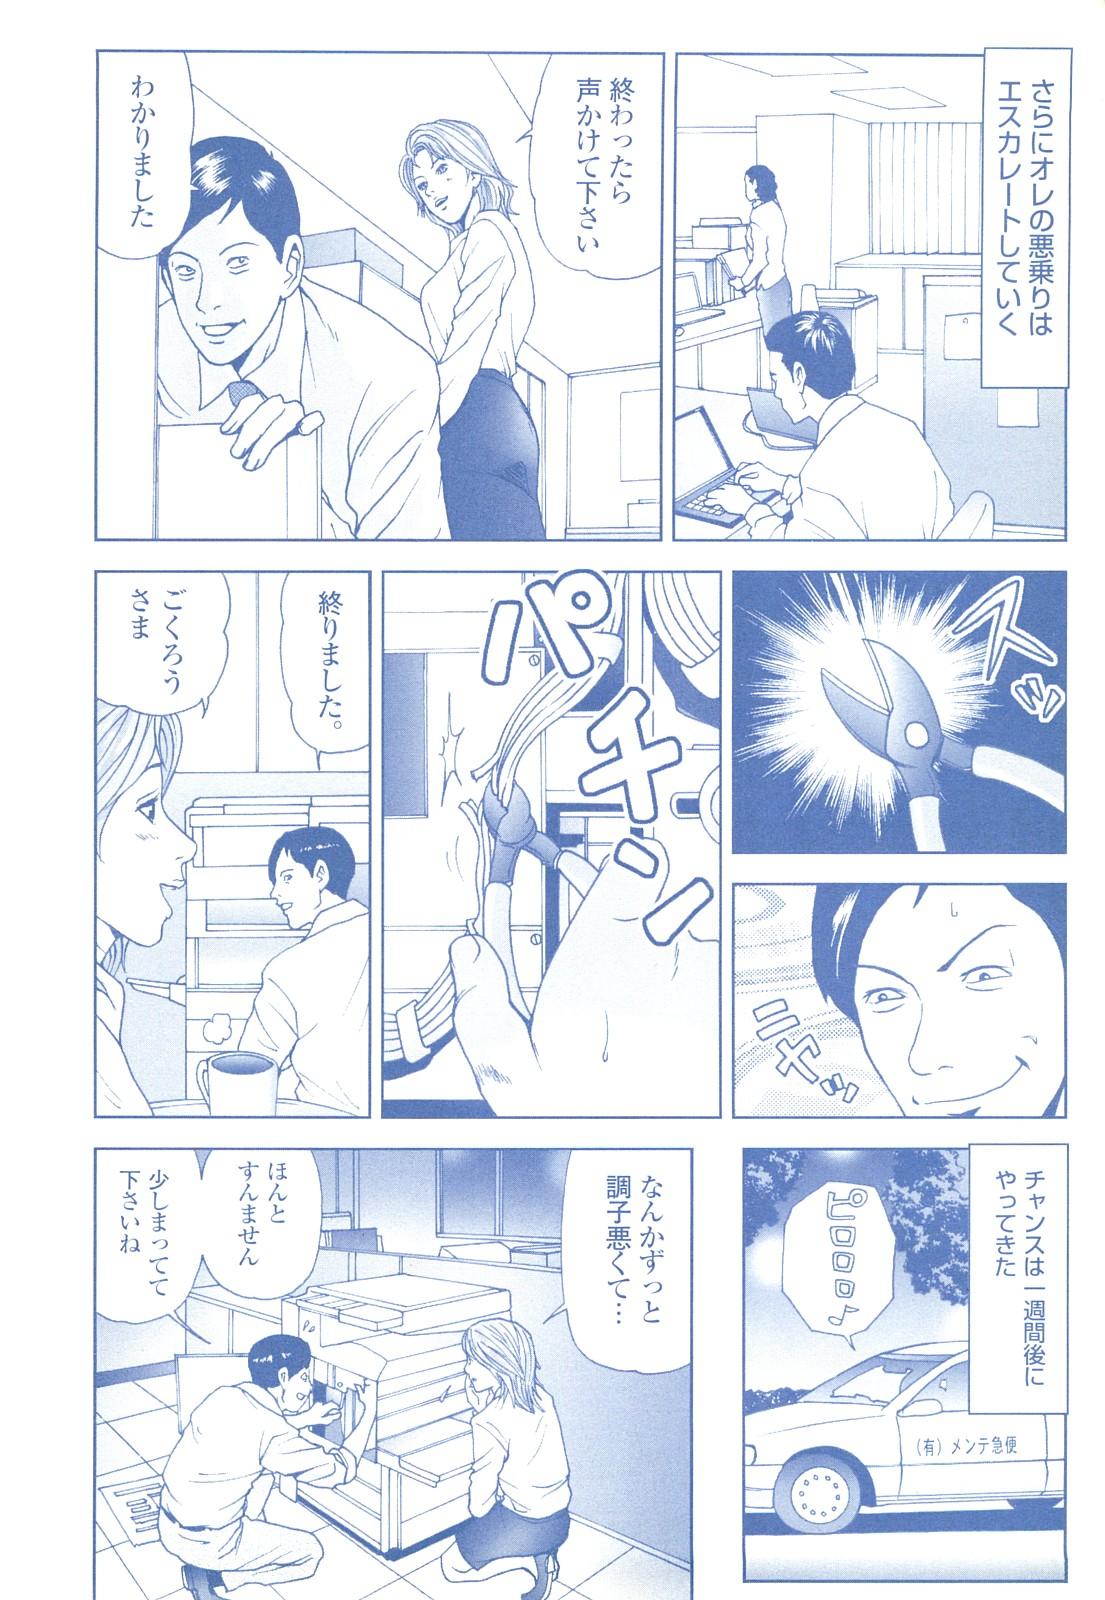 コミック裏モノJAPAN Vol.18 今井のりたつスペシャル号 235